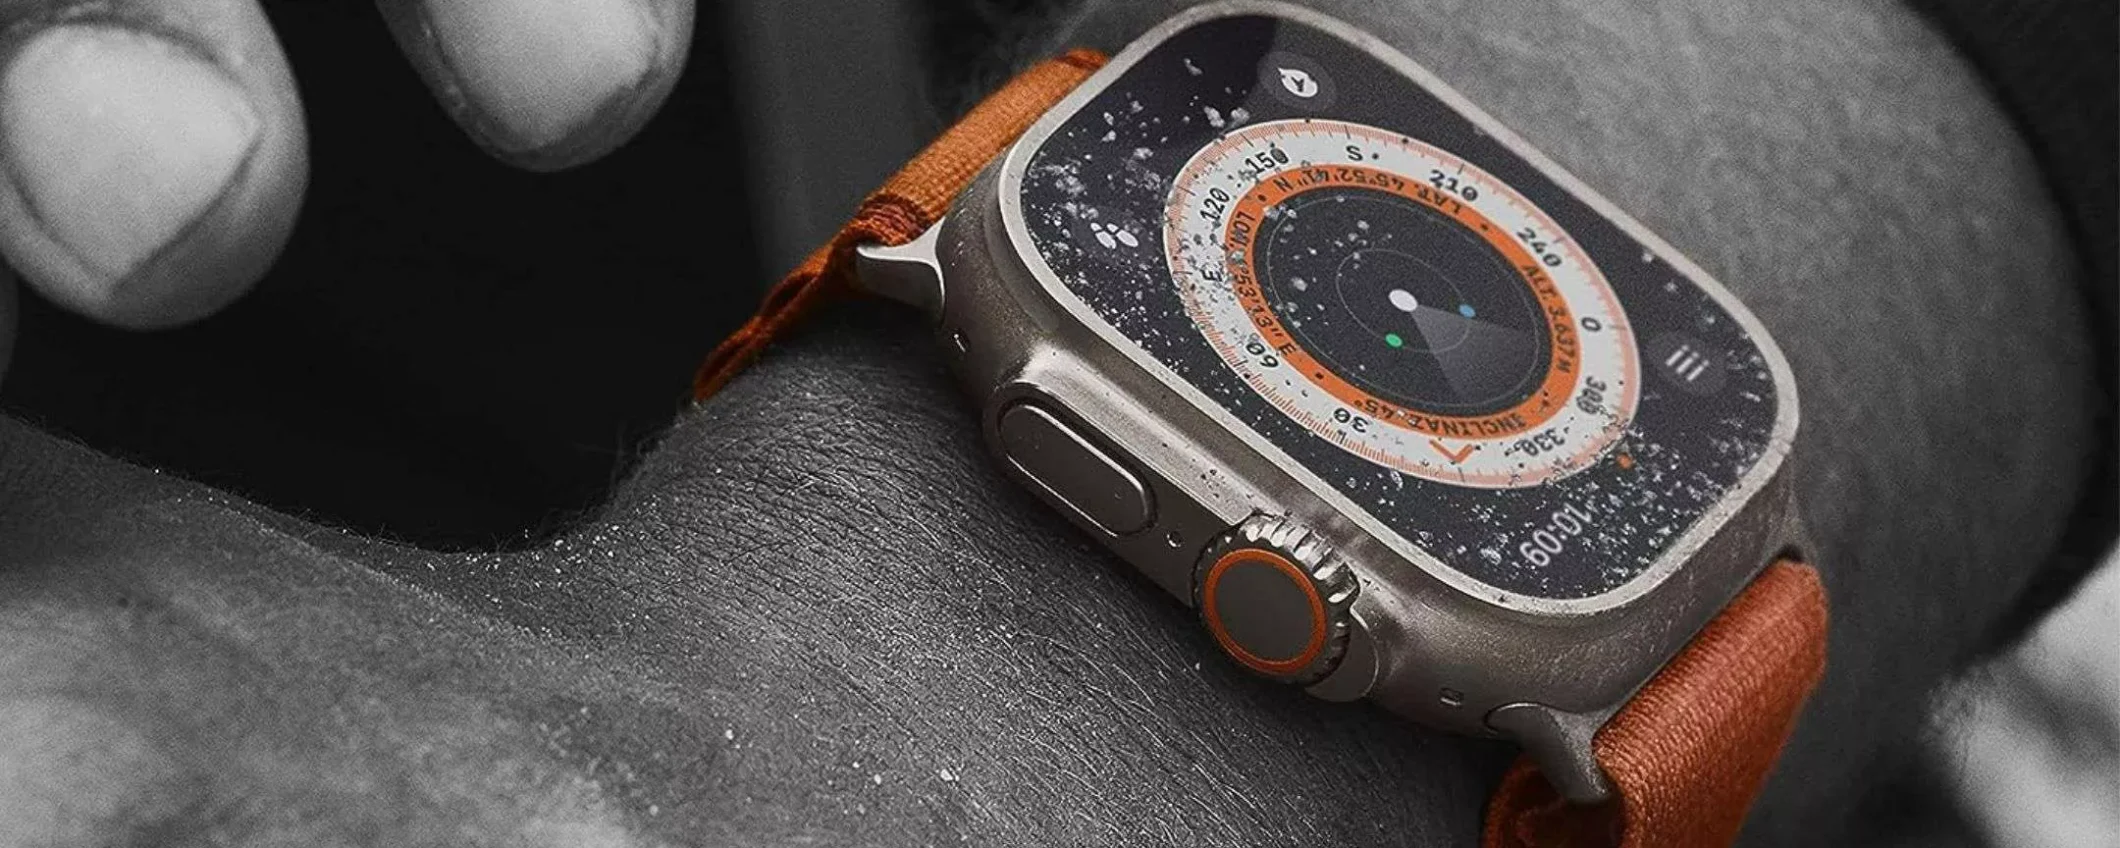 Apple Watch Ultra 2 a soli 849€ su Amazon: corri a prenderlo ADESSO